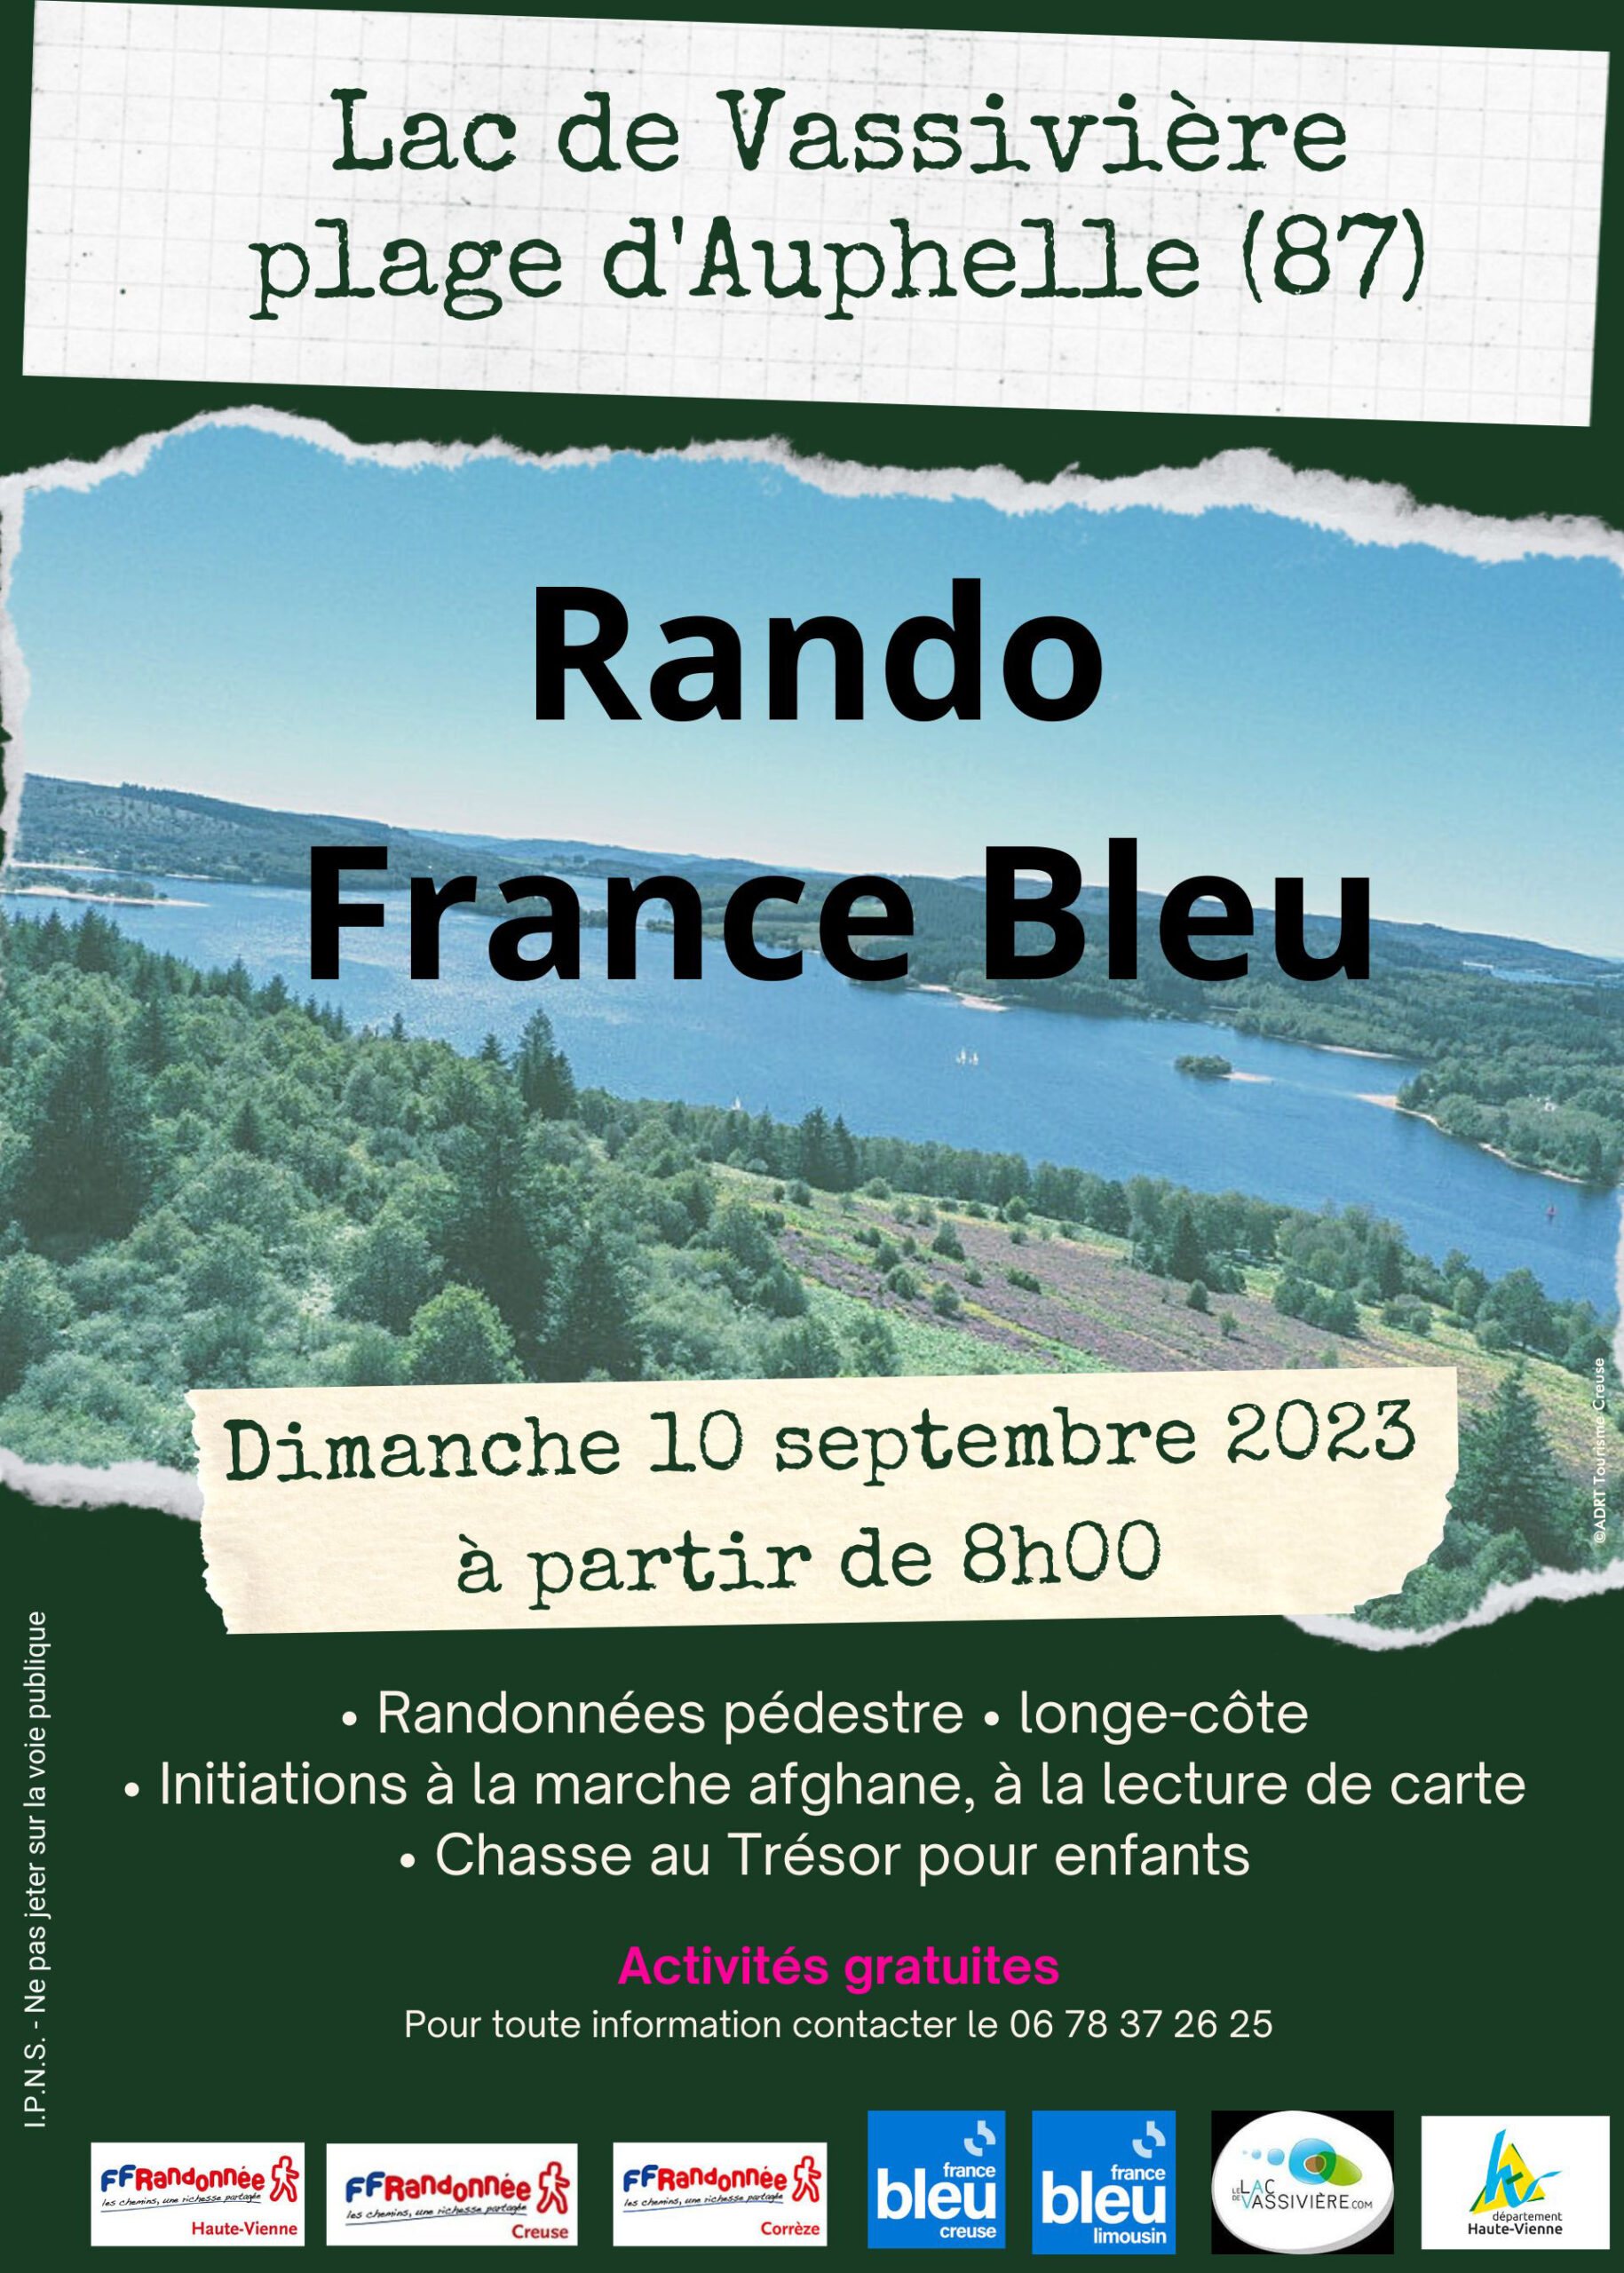 La Rando France Bleu Vassivière